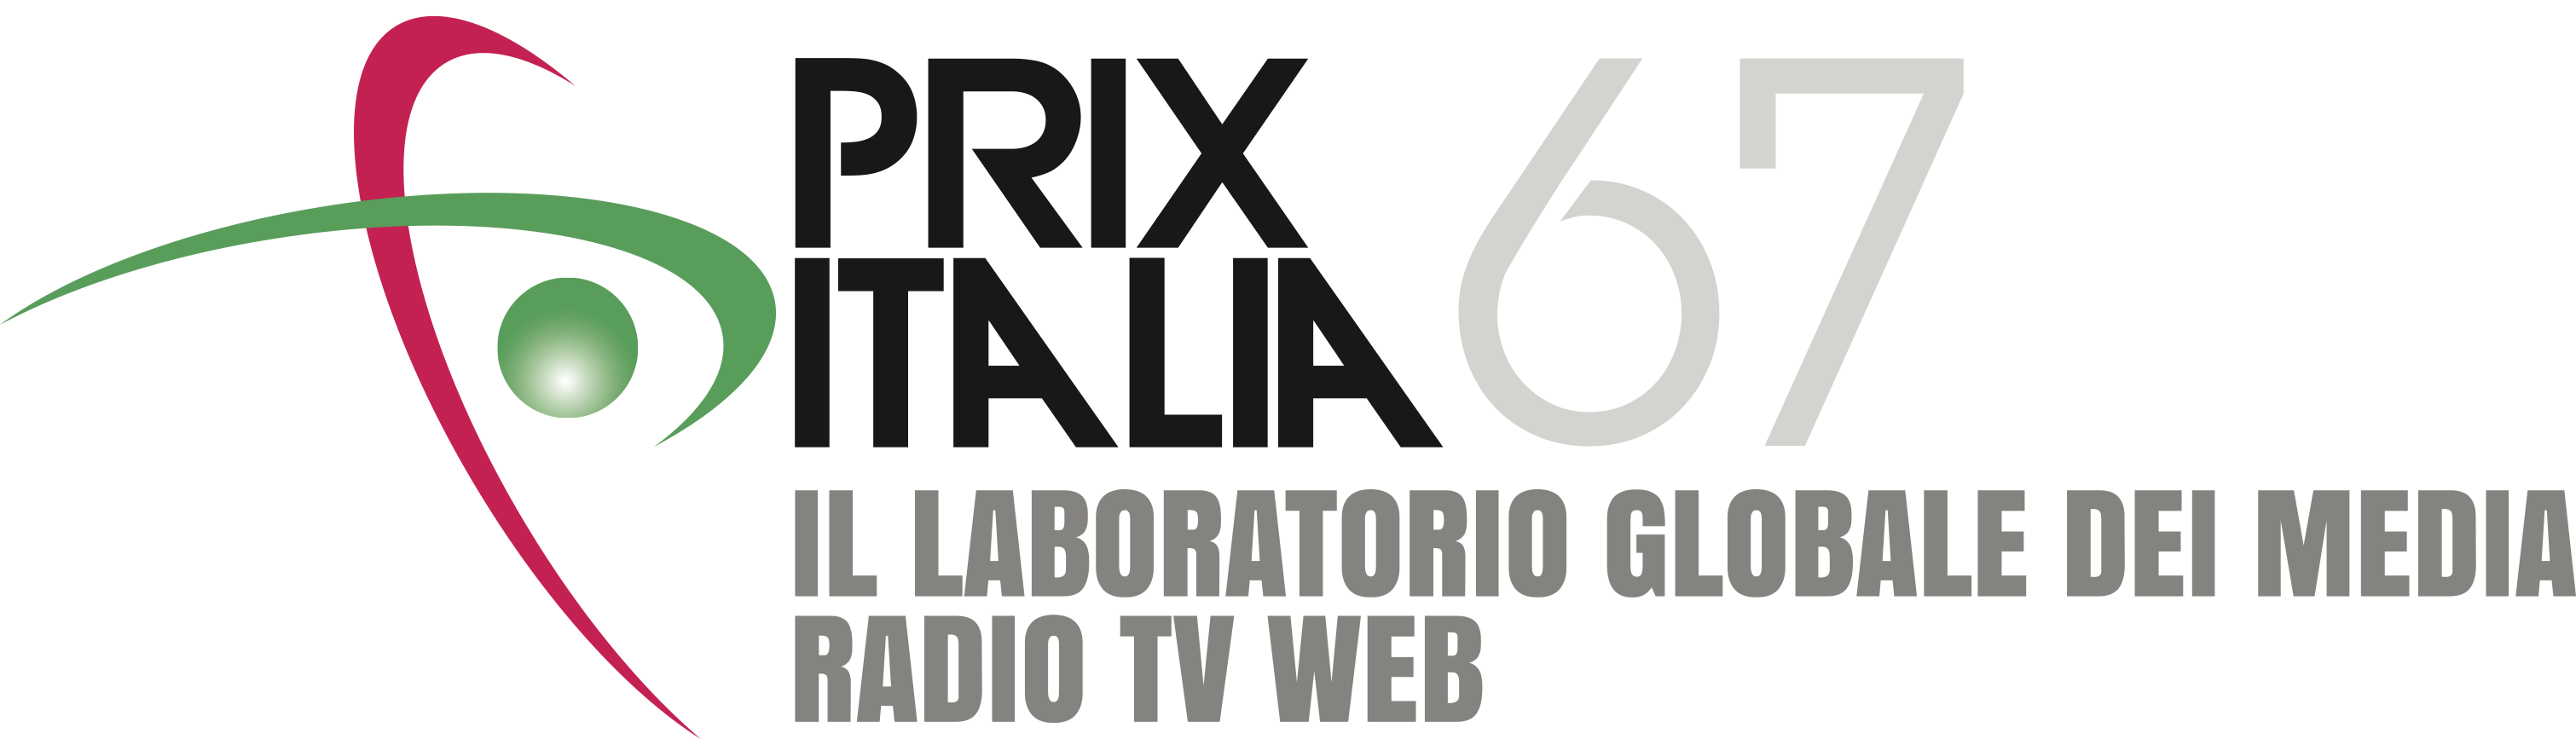 Prix Italia 67